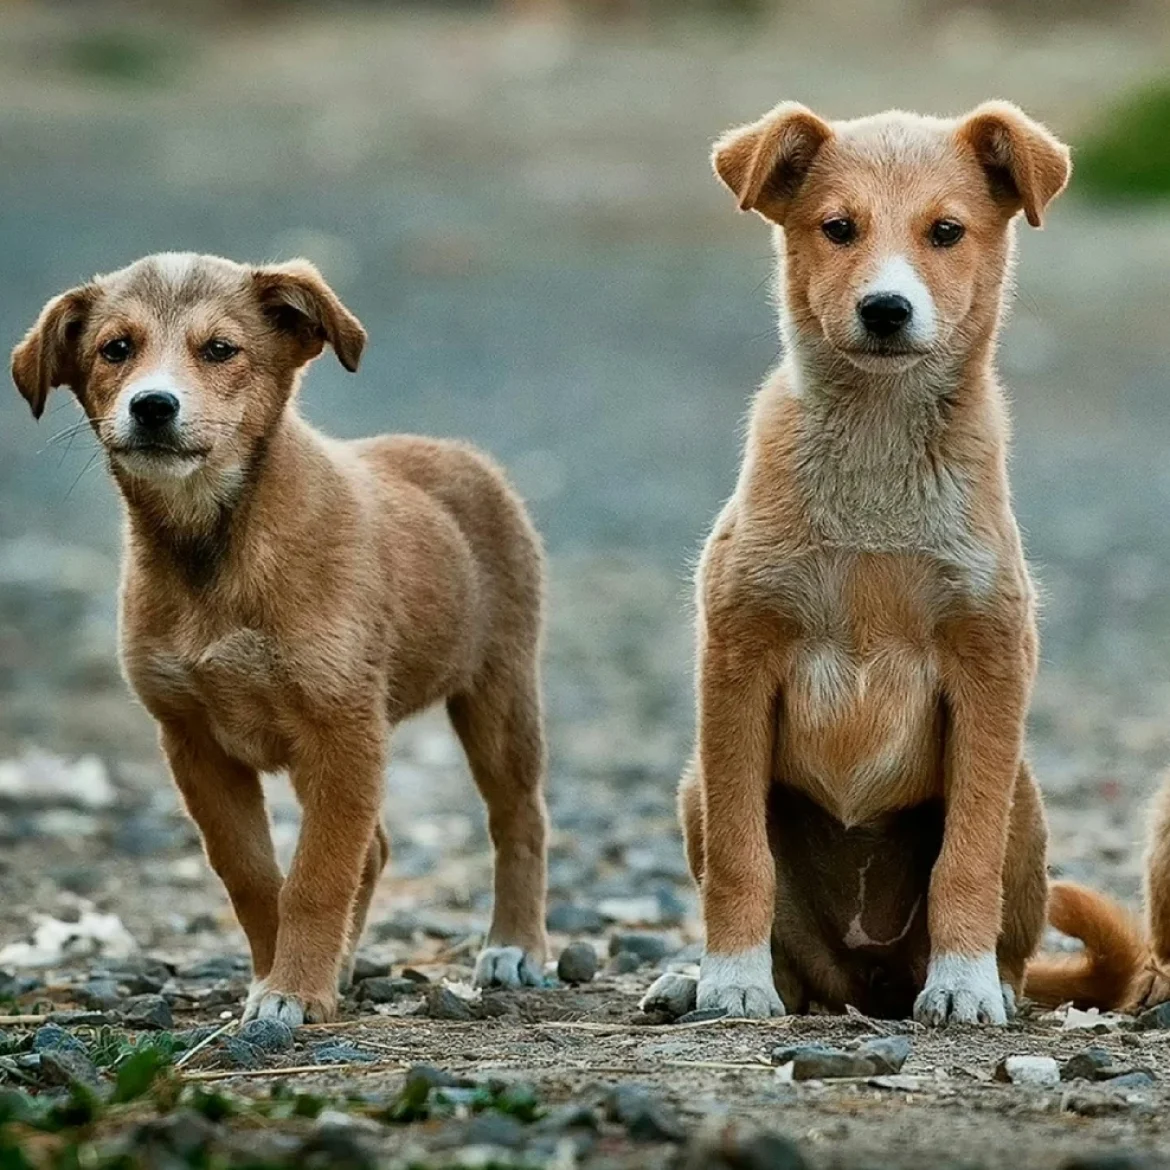 Tien honden overleden in super-de-luxe hondenpension, politie doet onderzoek